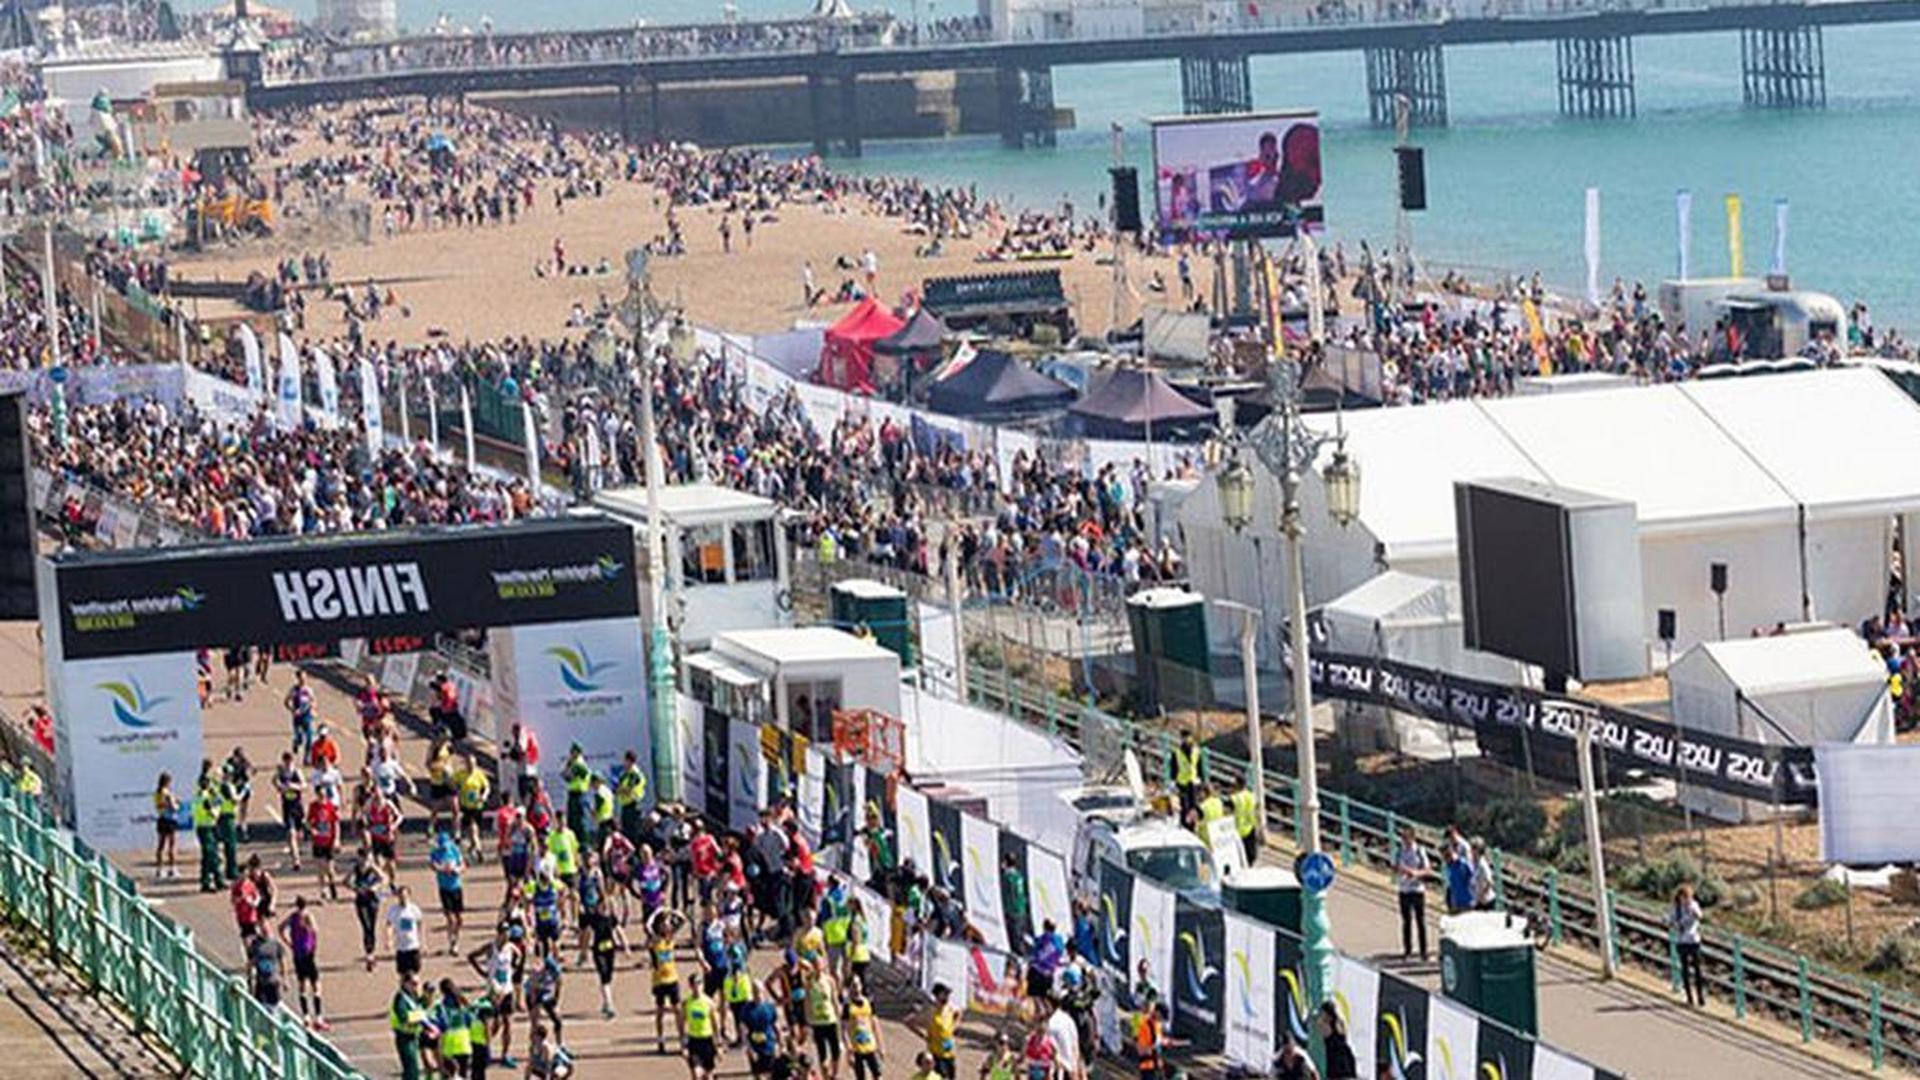 Brighton Marathon